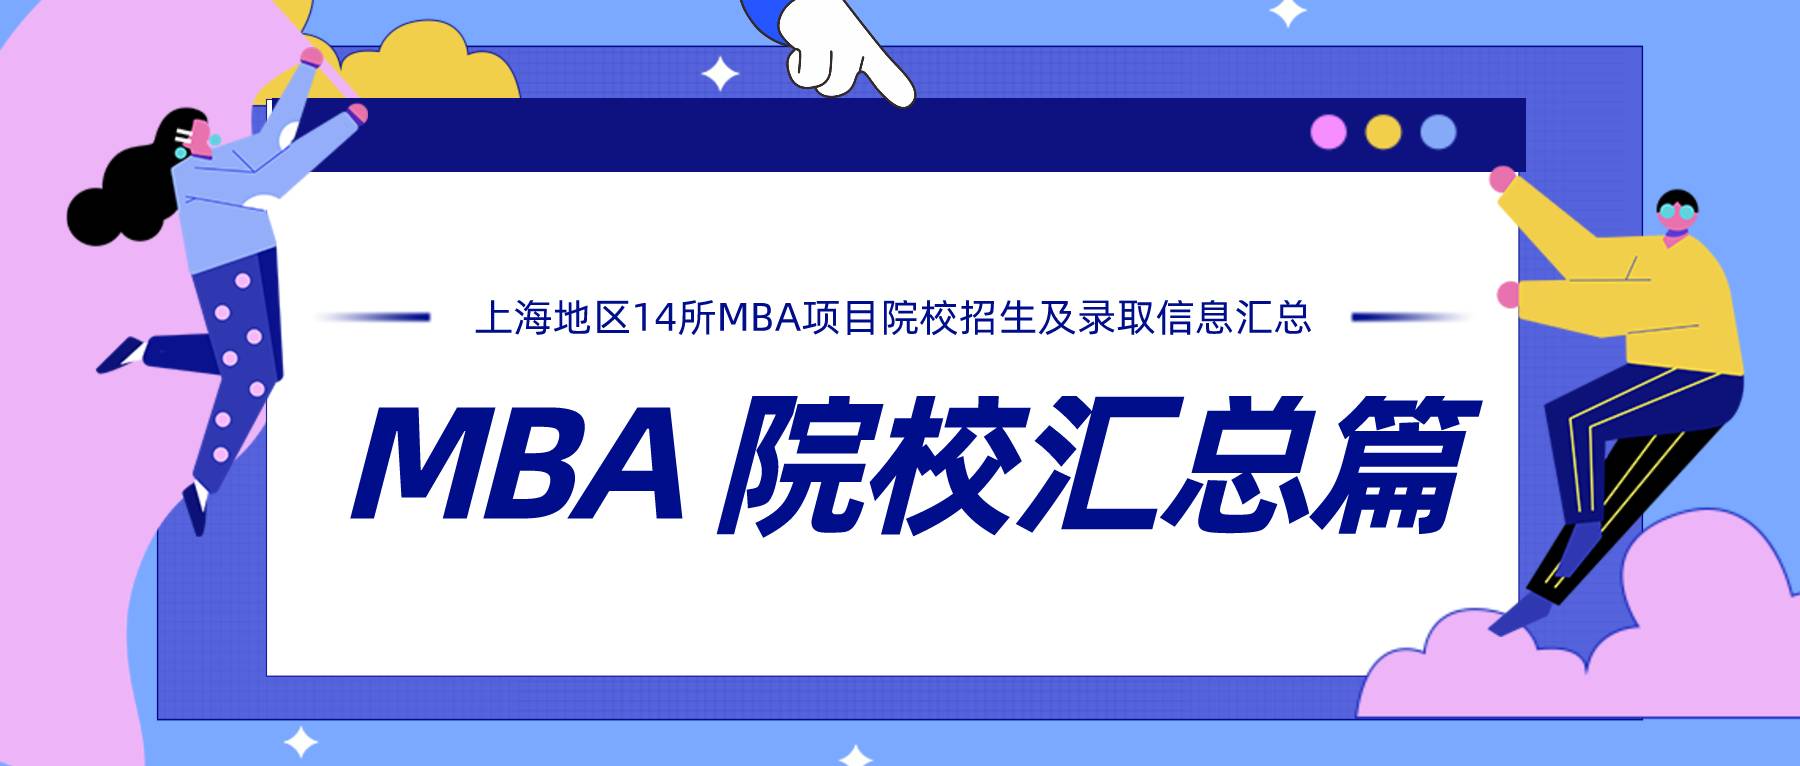 上海地区14所MBA项目院校招生及录取信息汇总